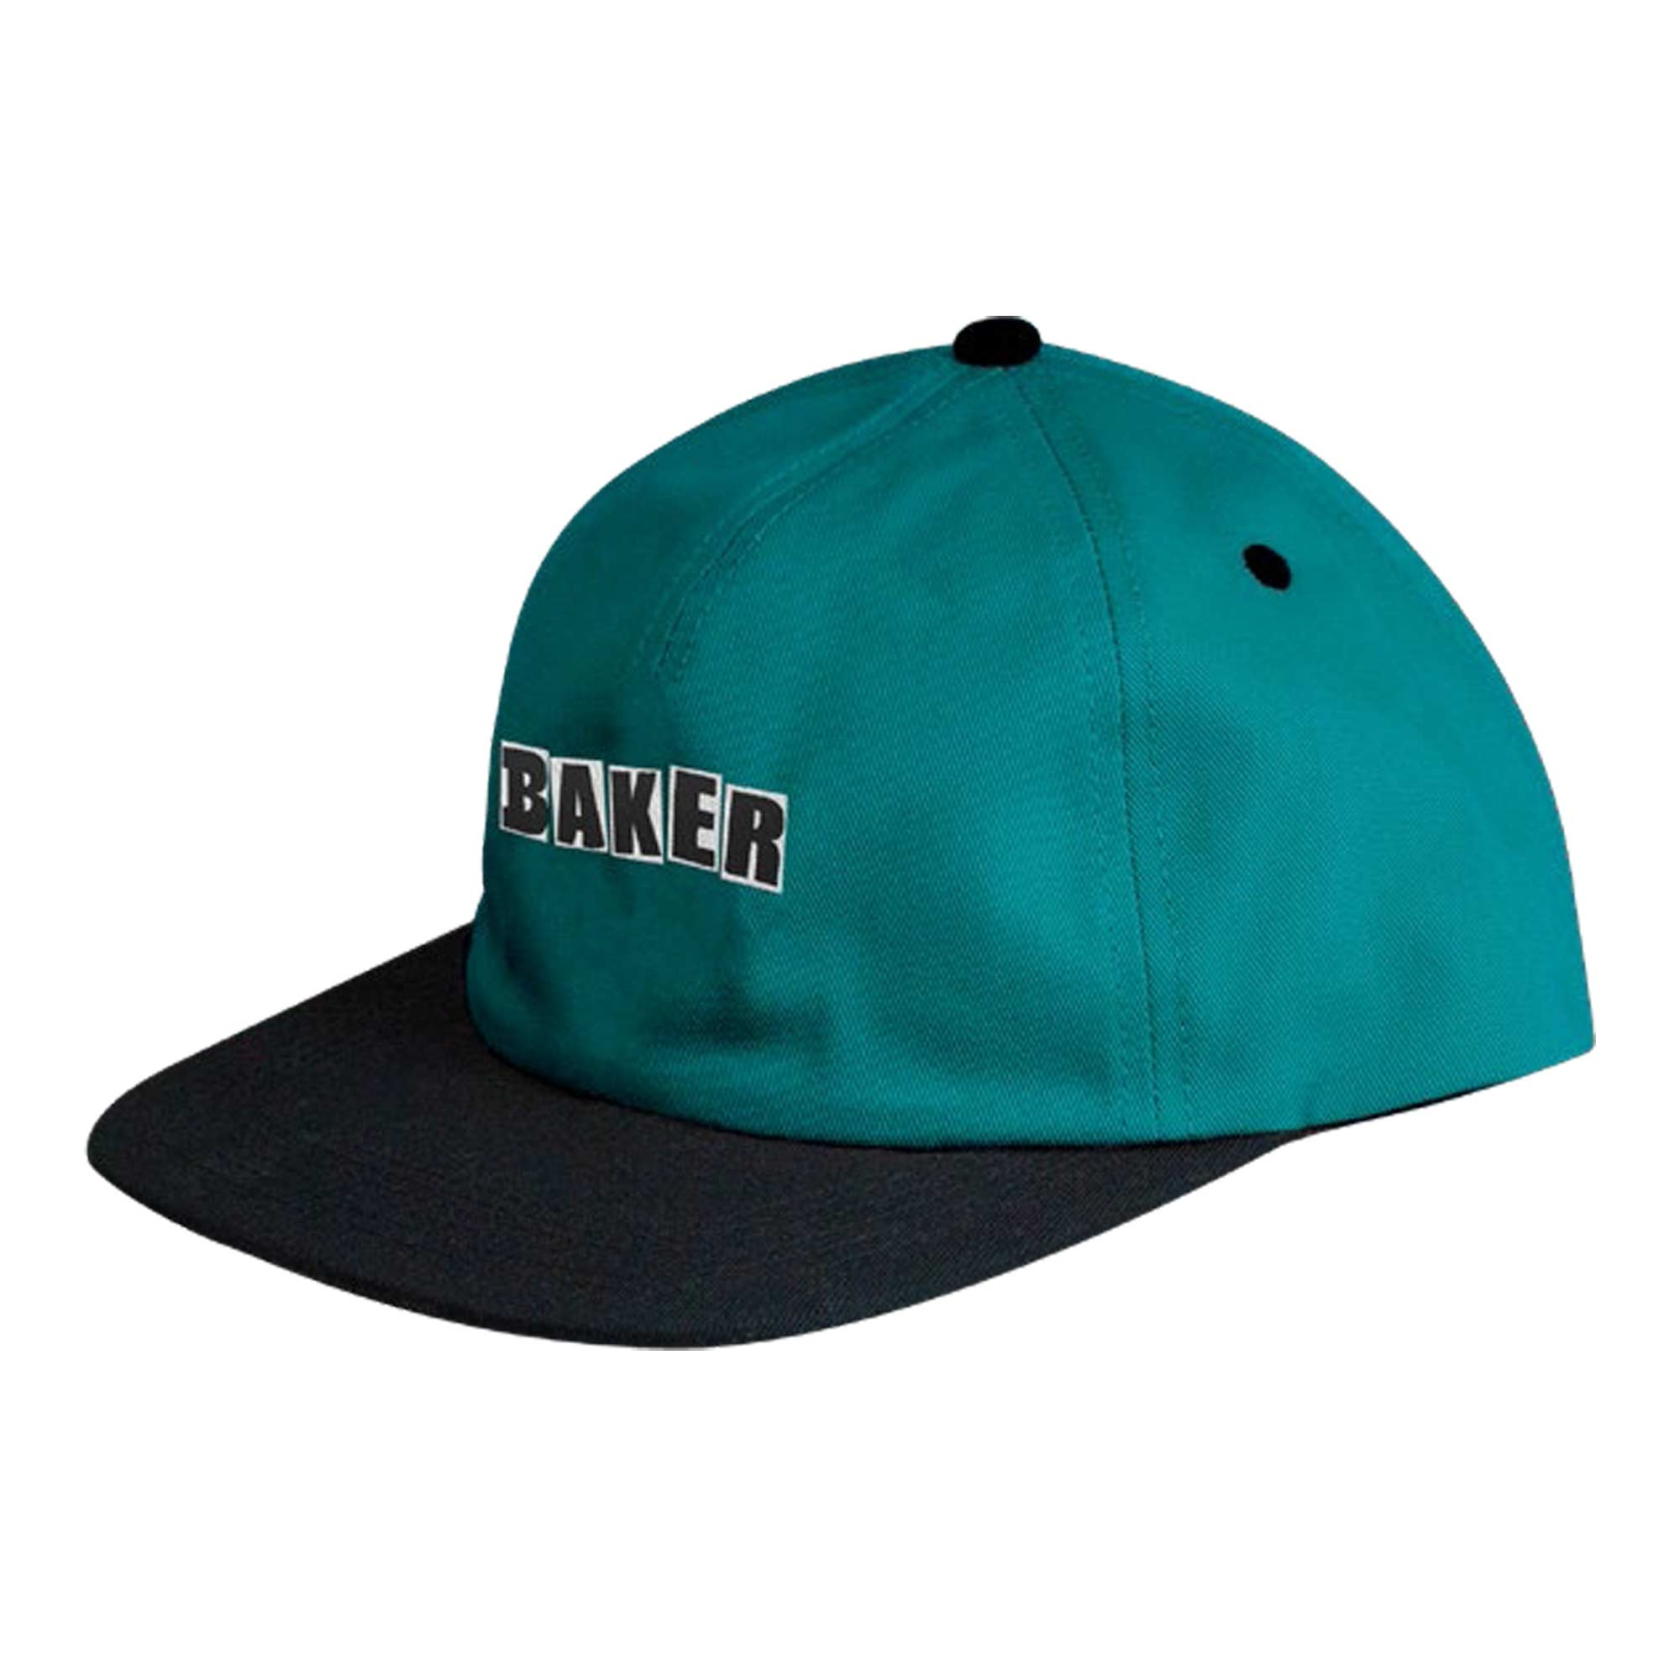 BAKER Cap BRAND LOGO Snapback, black/aqua